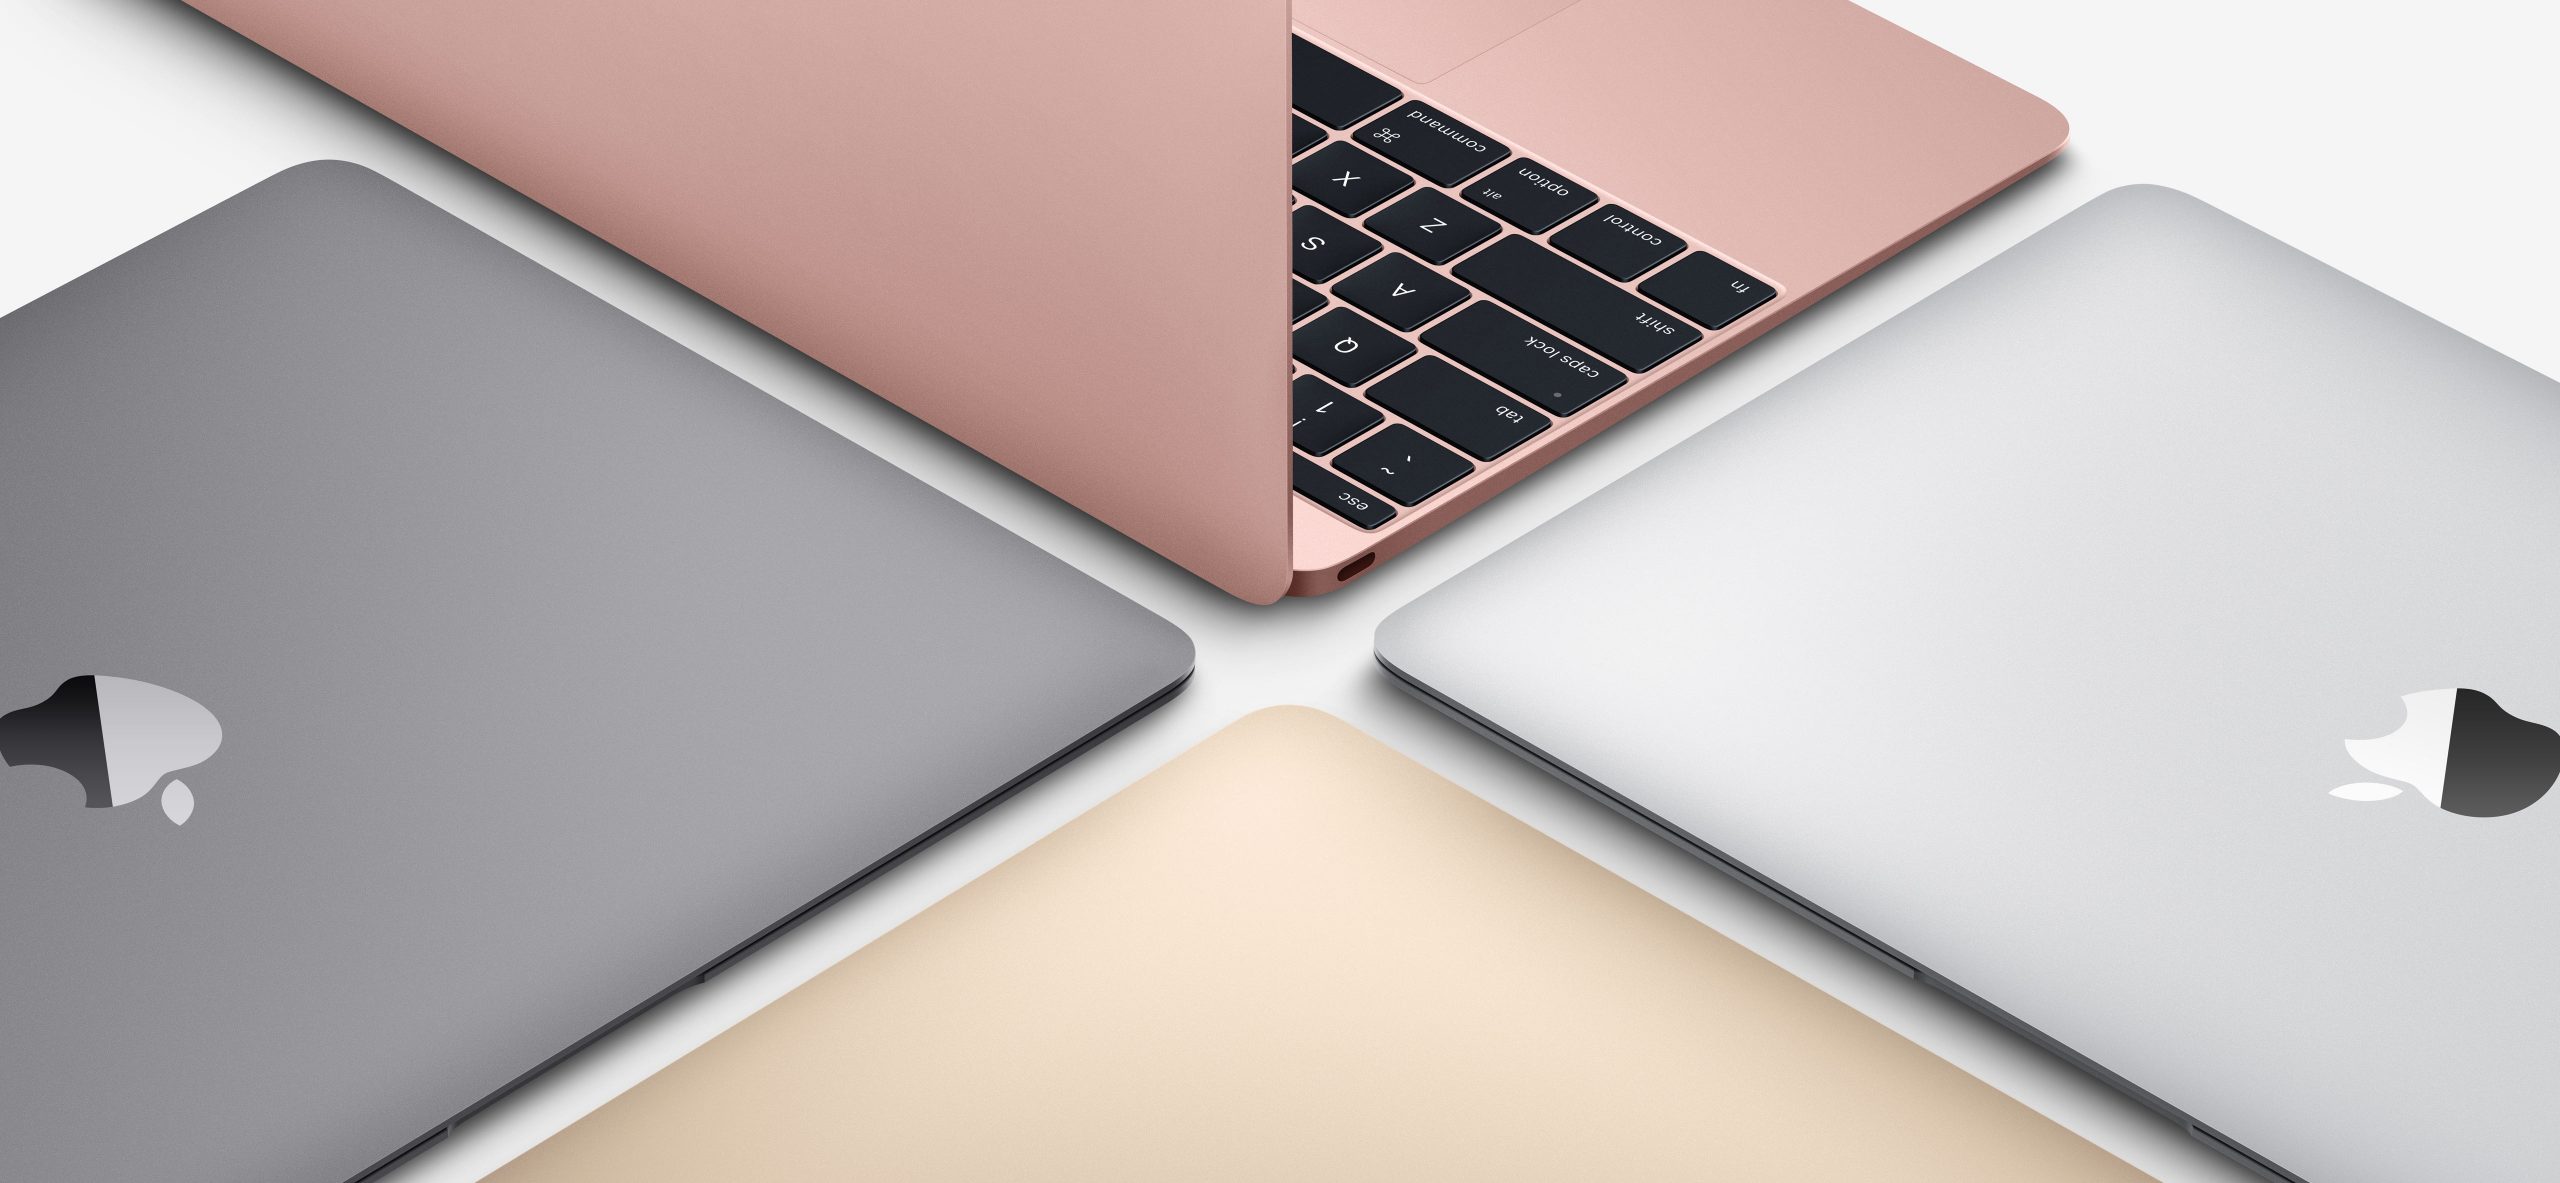 Uue toote hind: uus MacBook kannatab USB-C lisaseadmete maailmas ebanormaalsuse all